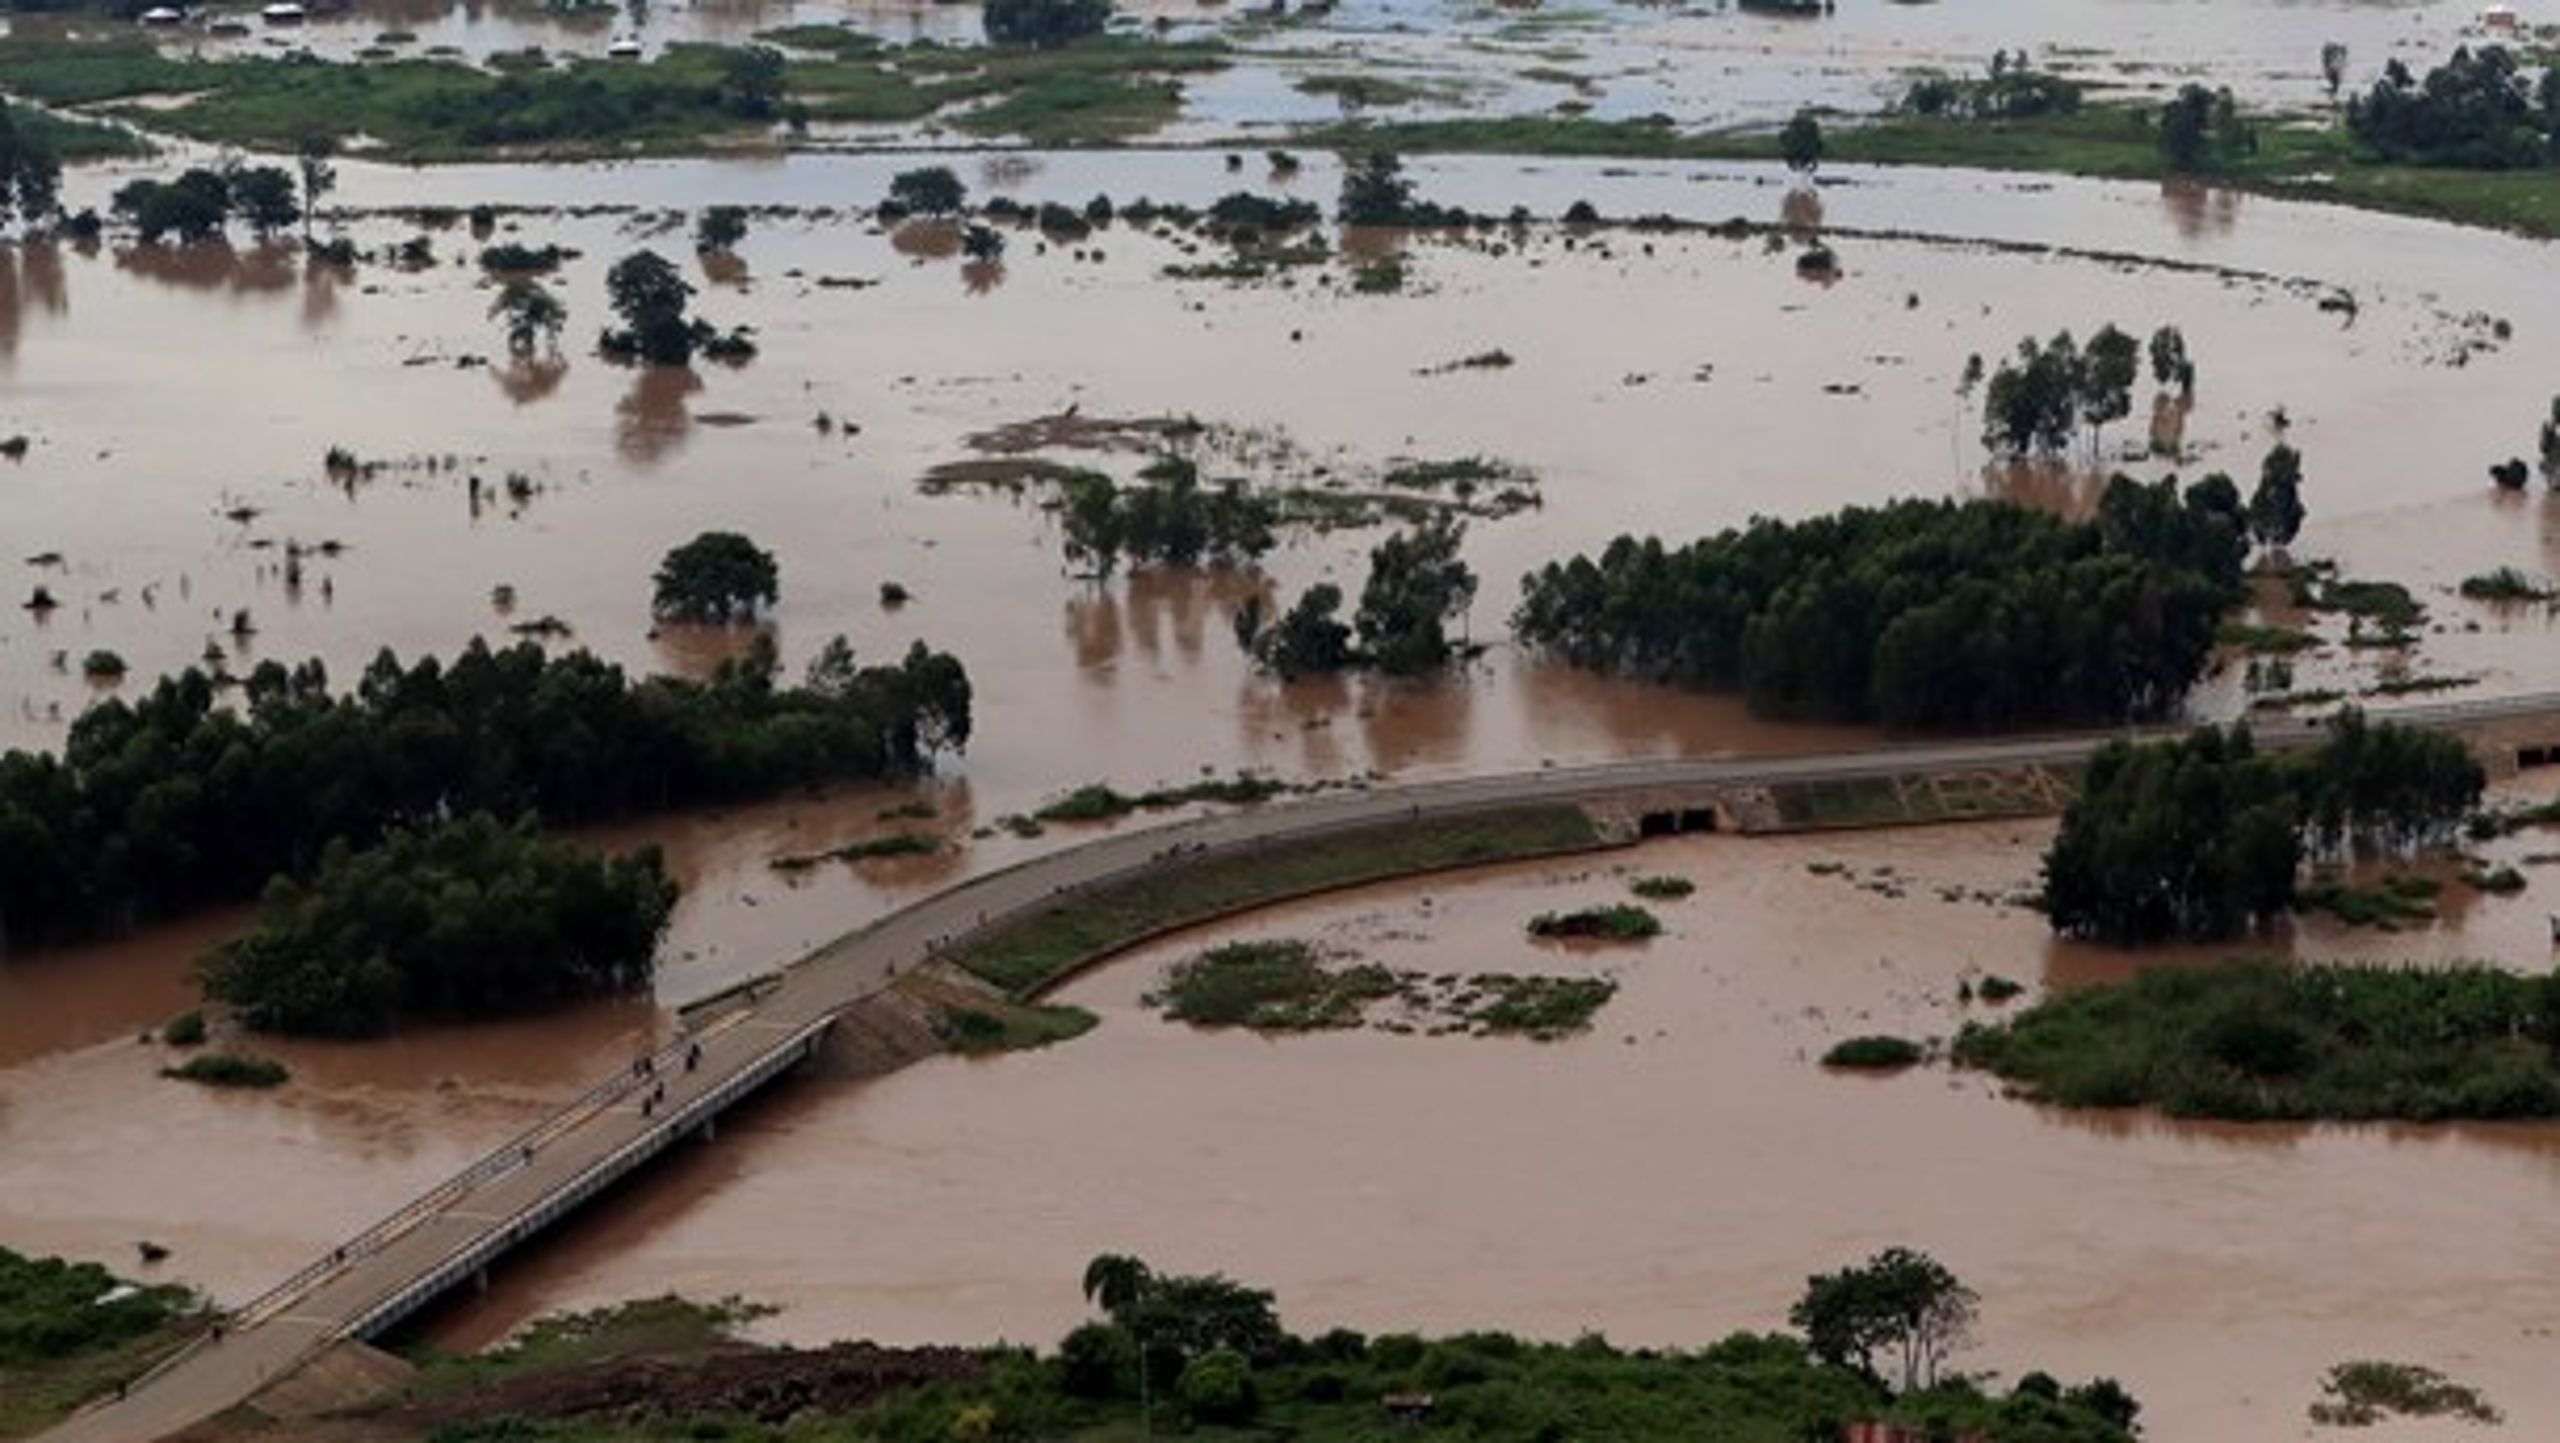 Mens coronapandemien overbyder klimakrisen i den politiske dagsorden, er tusindvis af mennesker på flugt fra oversvømmelser i Kenya, skriver Mattias Söderberg.&nbsp;